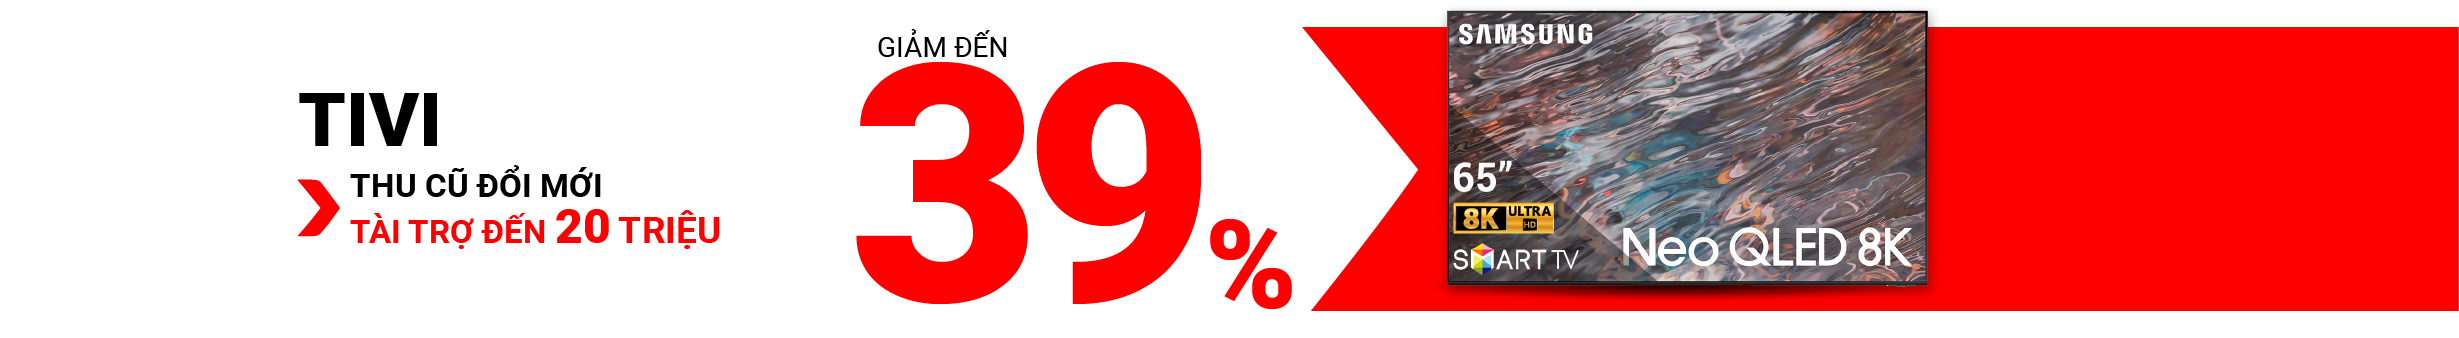 TV%20gi%E1%BA%A3m%20%C4%91%E1%BA%BFn%2039%25%20key